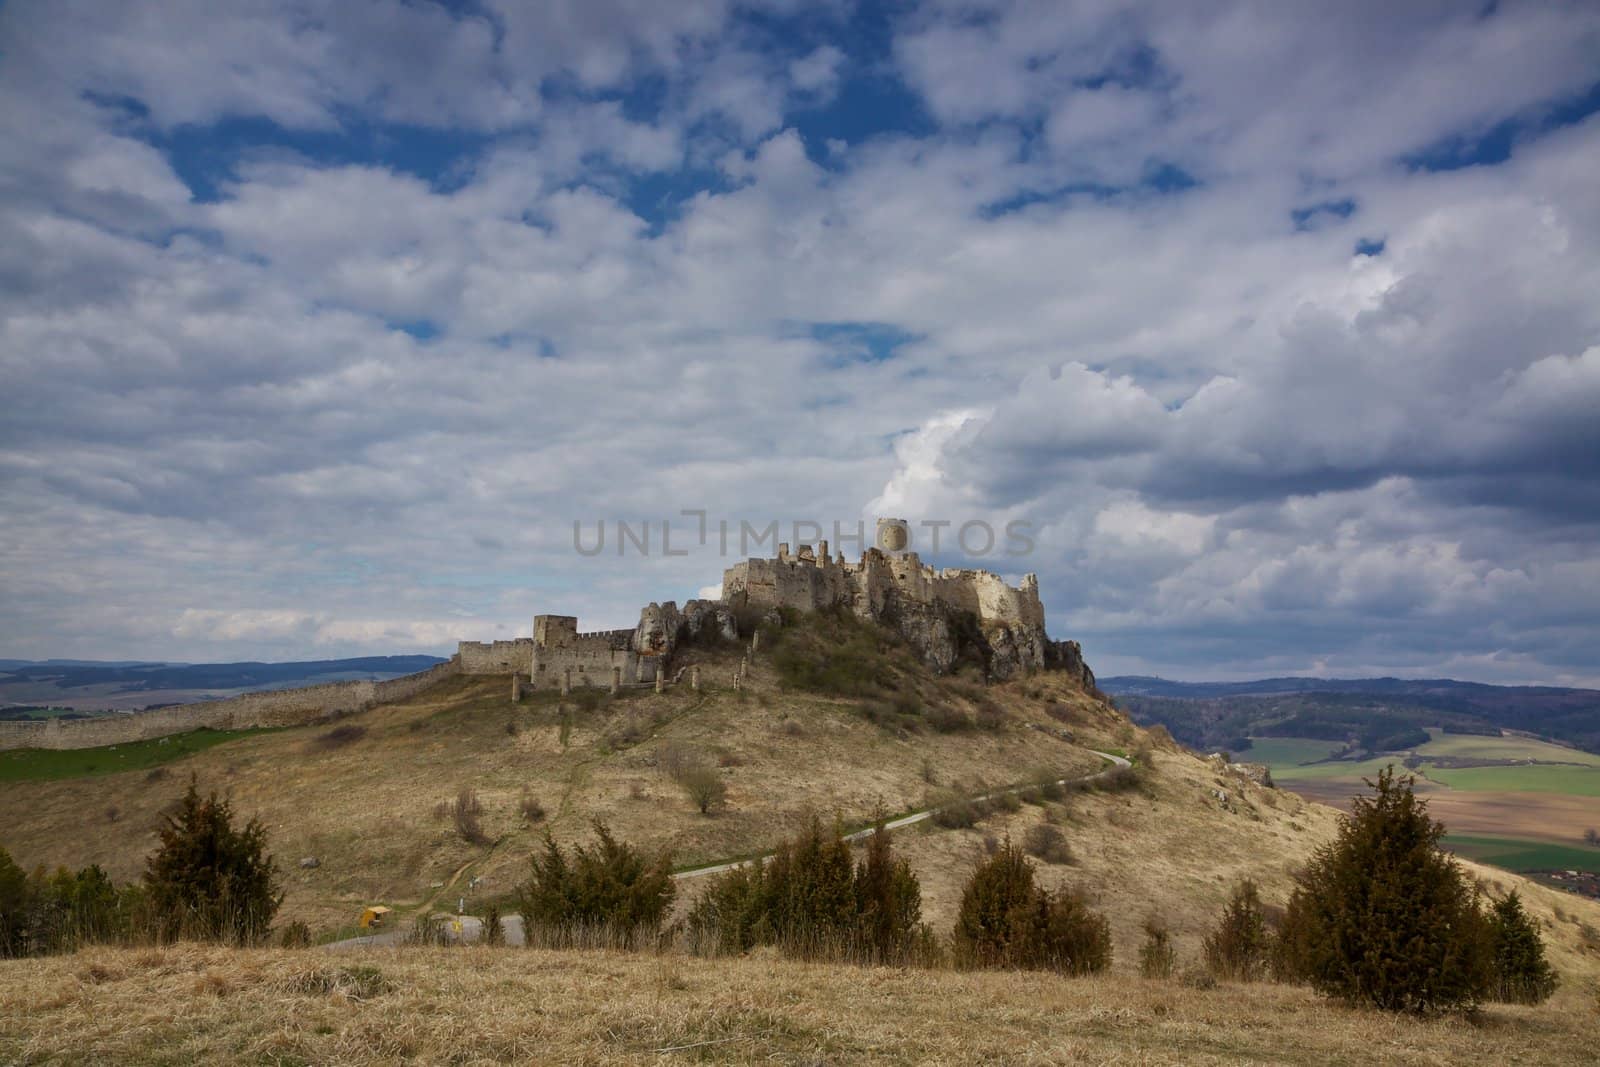 Spiš castle in eastern Slovakia by Harvepino